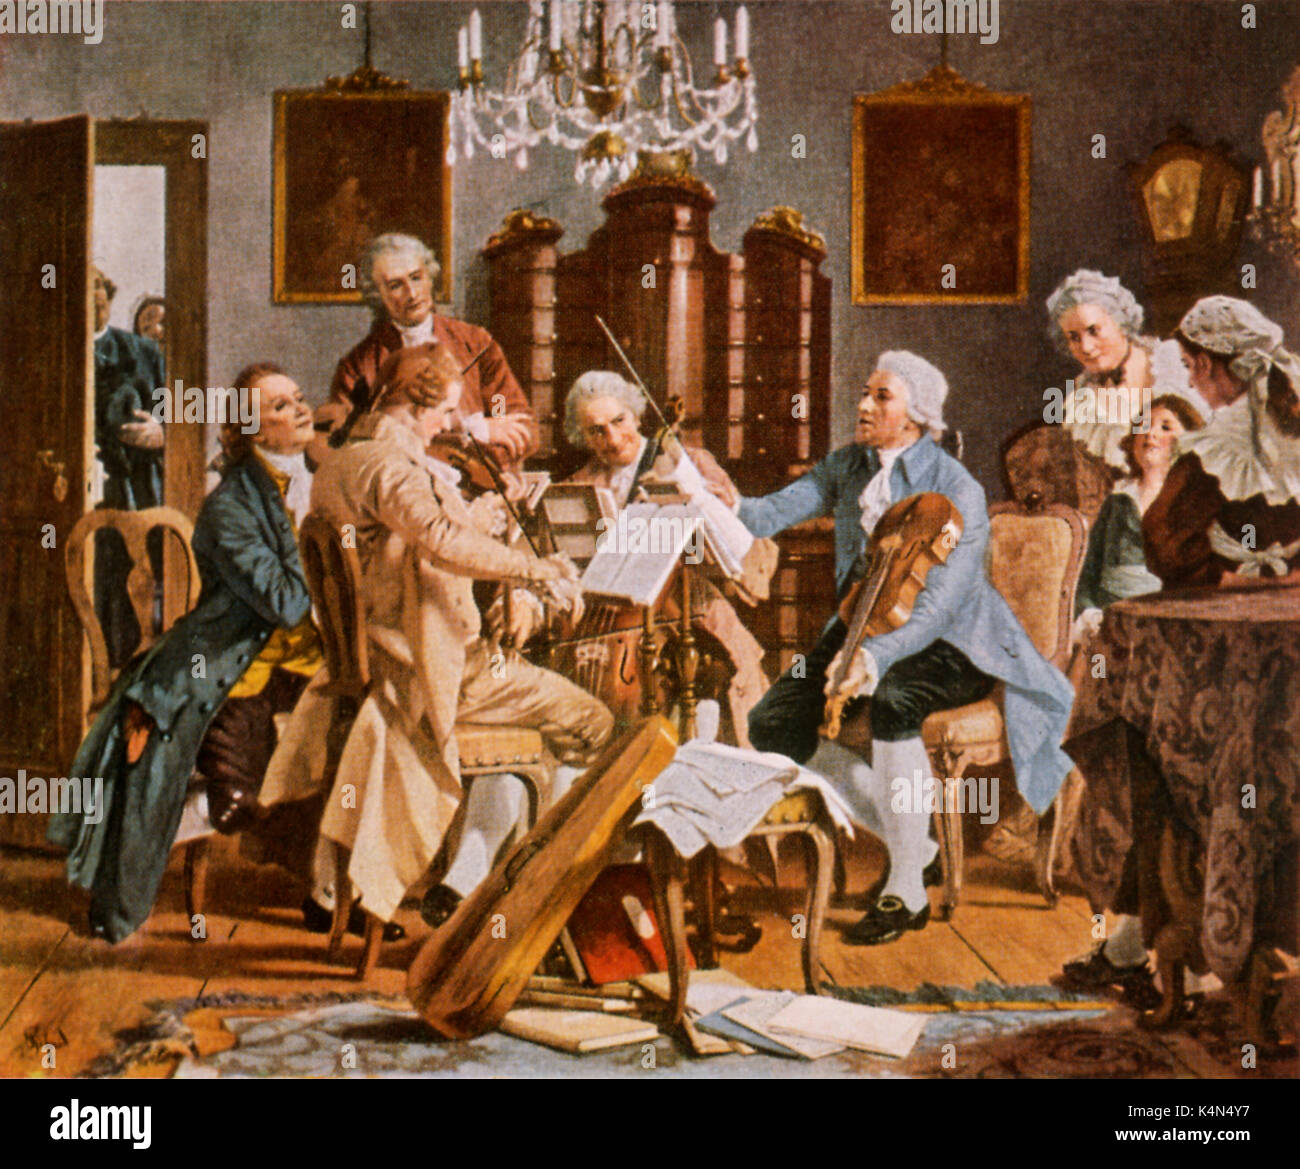 HAYDN, F J - Riproduzione in String Quartet a Esterhazy. Il compositore austriaco, 1732-1809. Musica da Camera classica Foto Stock